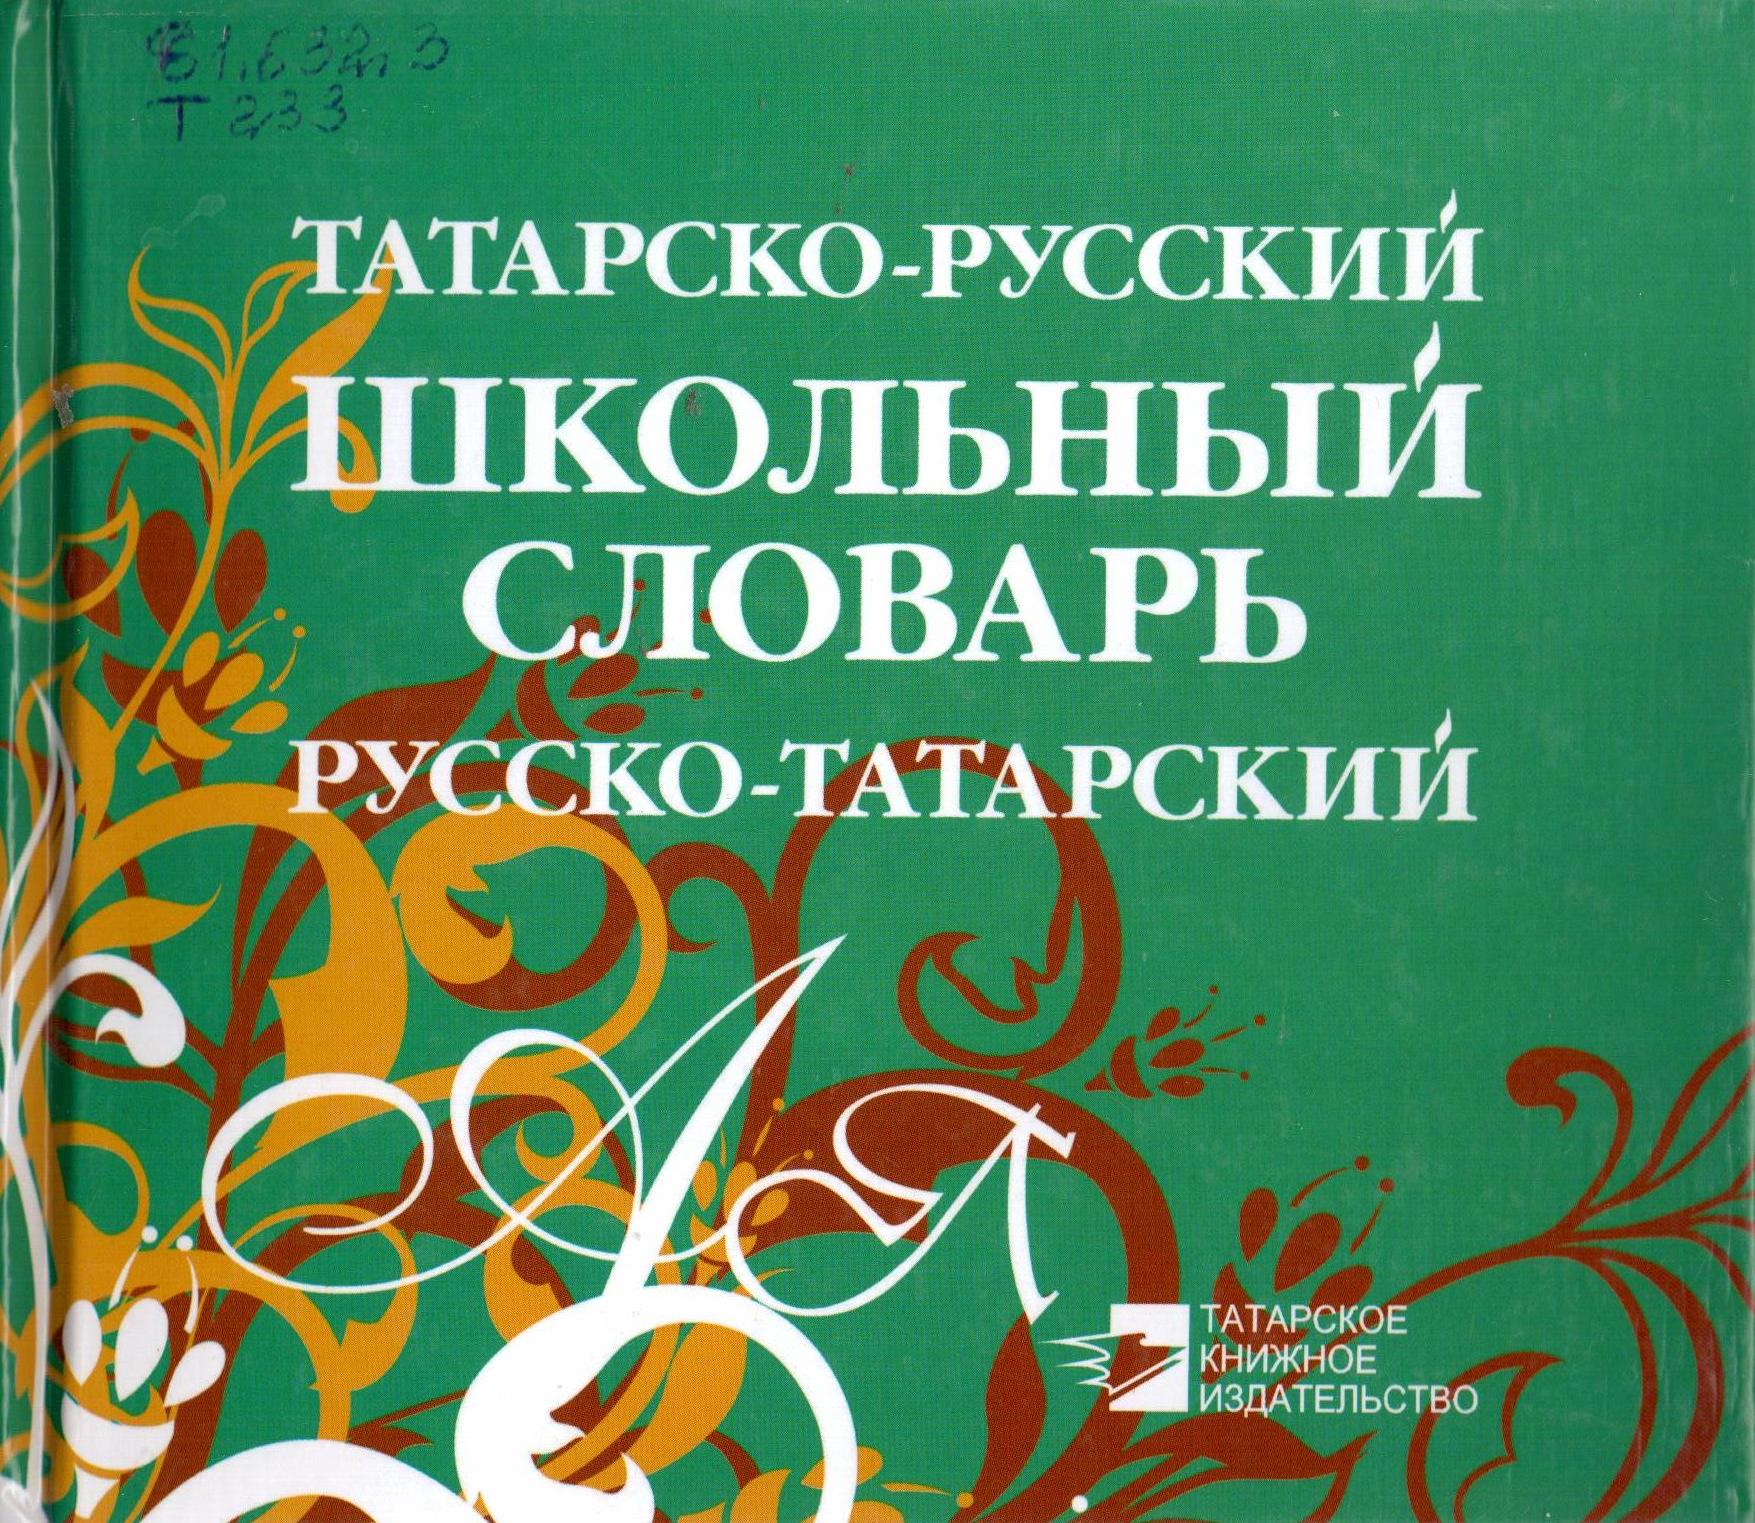 Словарь татарского языка